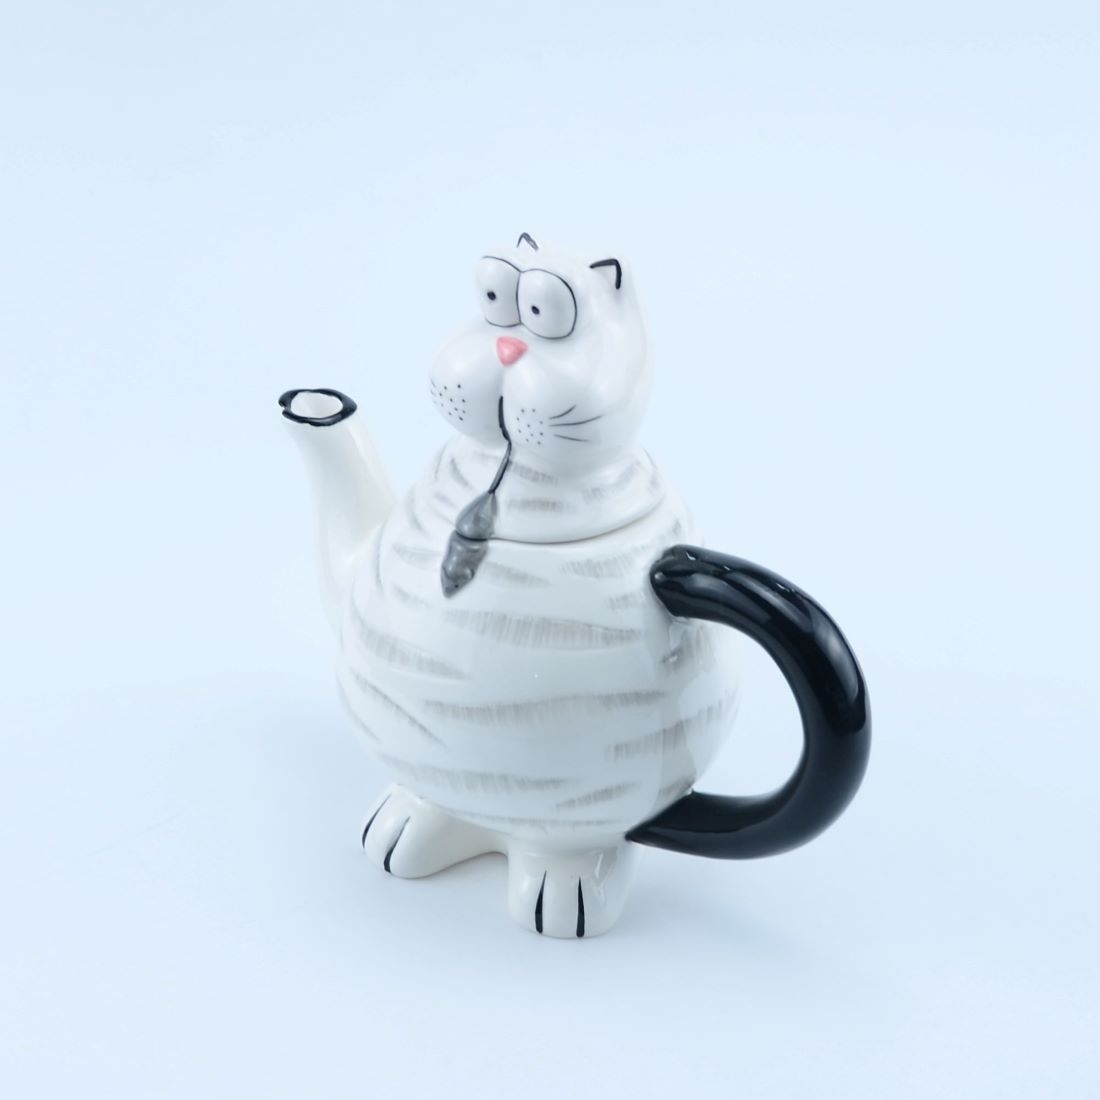 Ceramic Teapot with Cat-Inspired Design